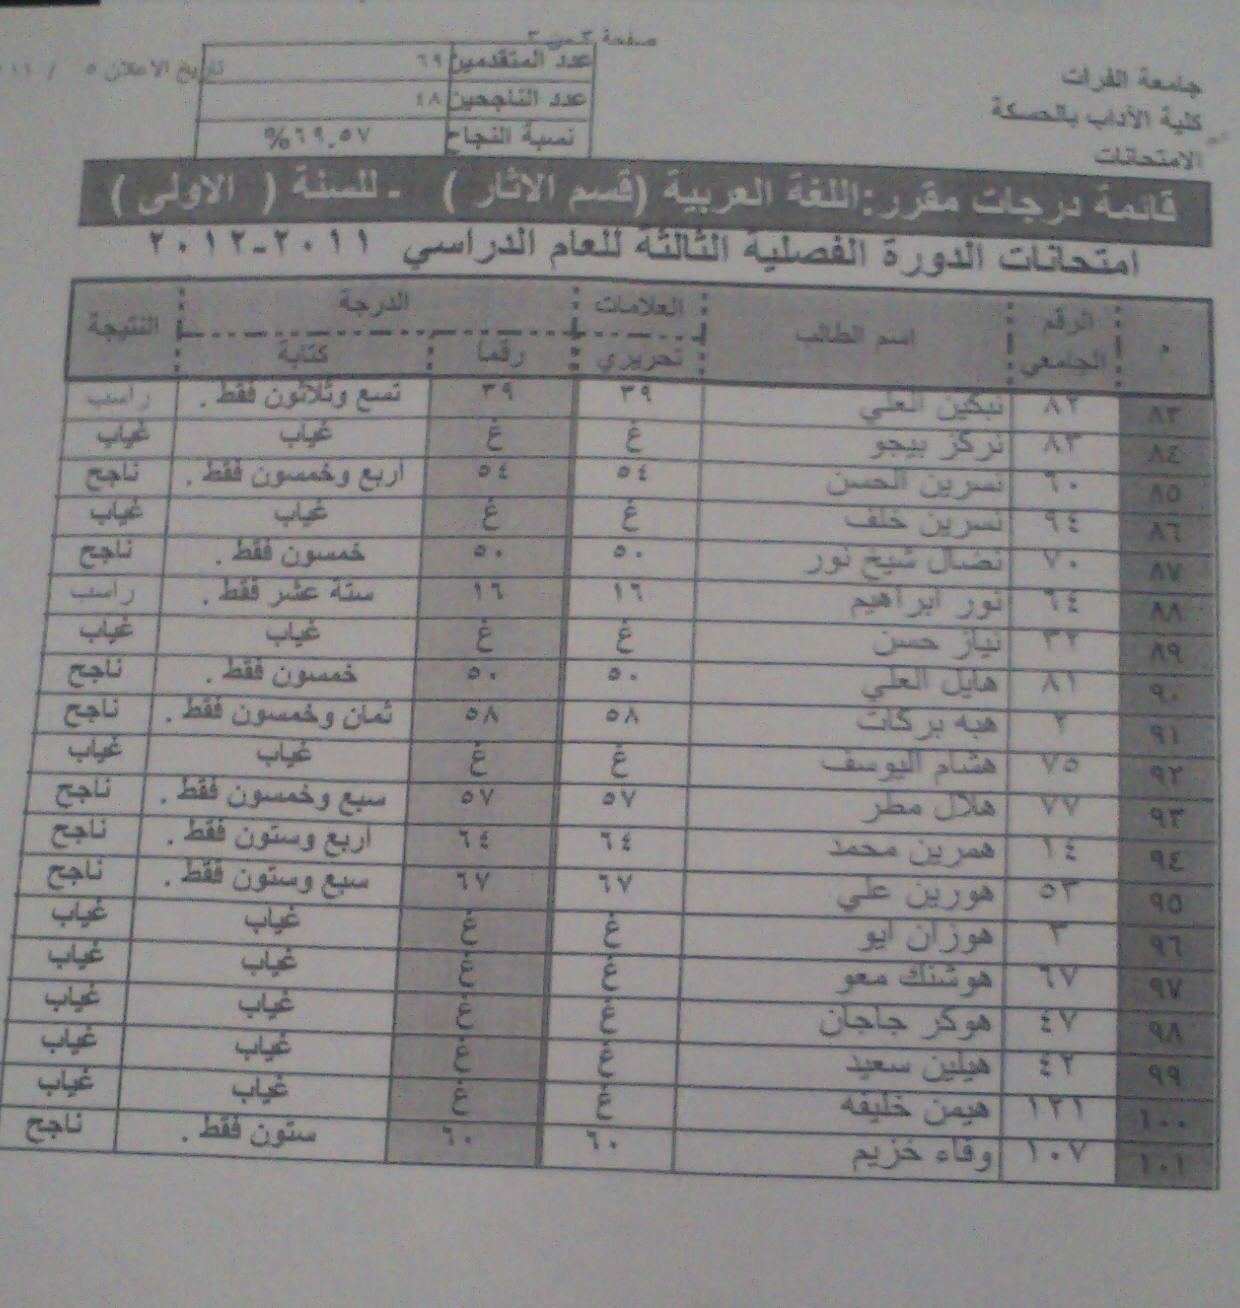 نتائج امتحان مقرر اللغة العربية س1 -الدورة الثالثة قسم الآثار Ouuooo11